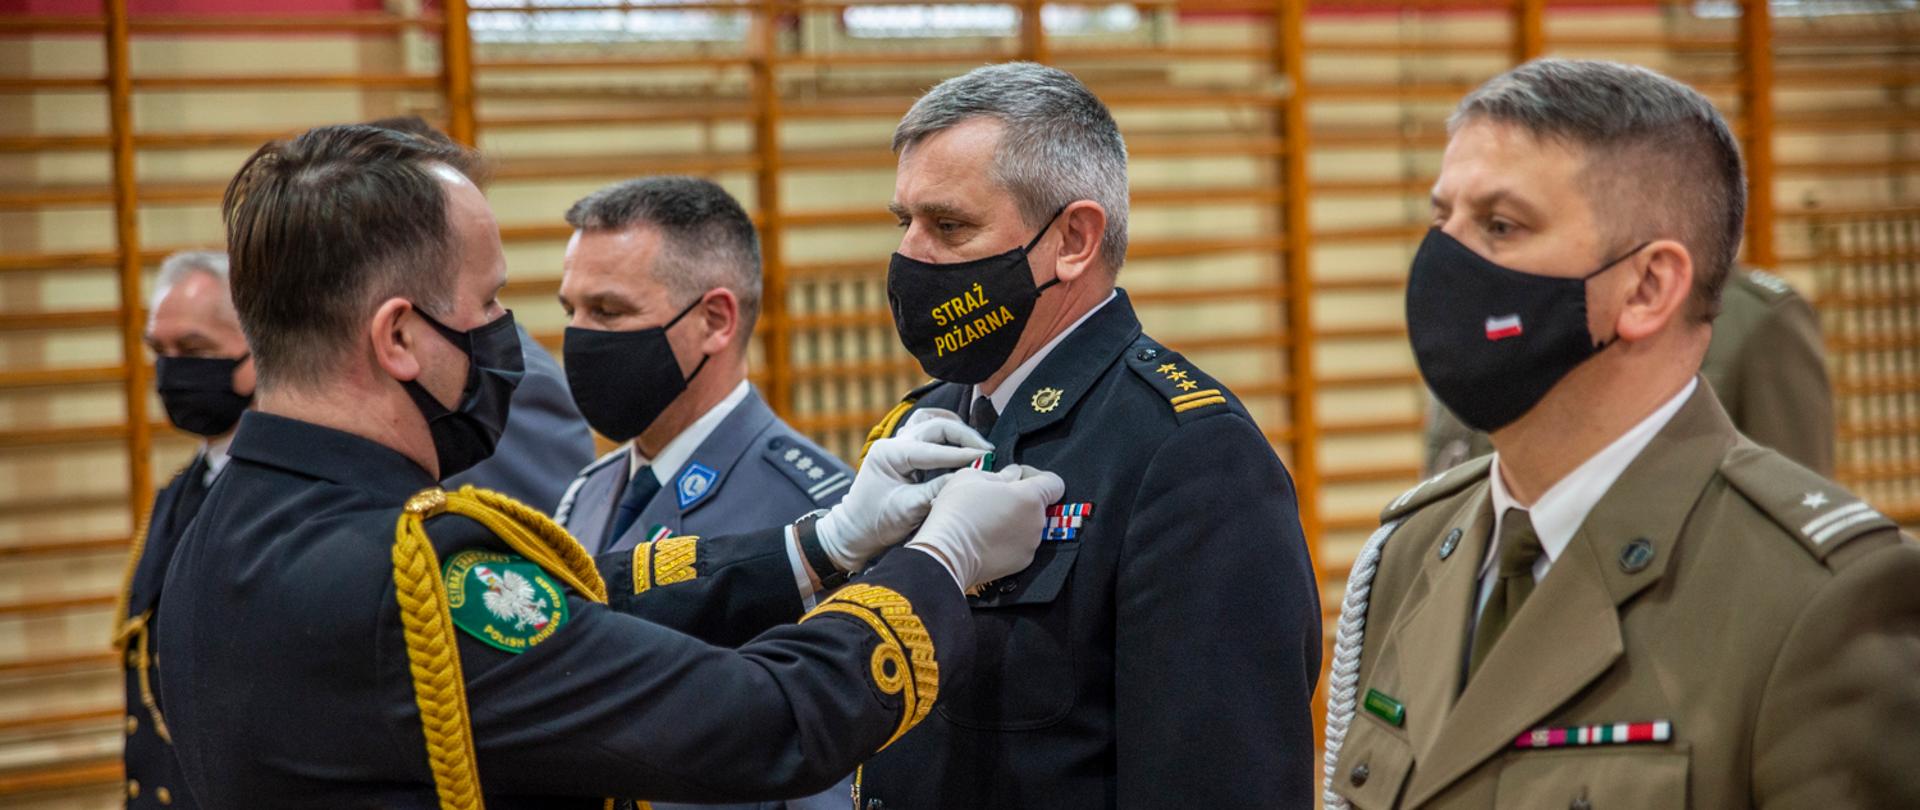 Komendant Morskiego Oddziału Straży Granicznej przypina medal do munduru pomorskiego komendanta wojewódzkiego Państwowej Straży Pożarnej. 